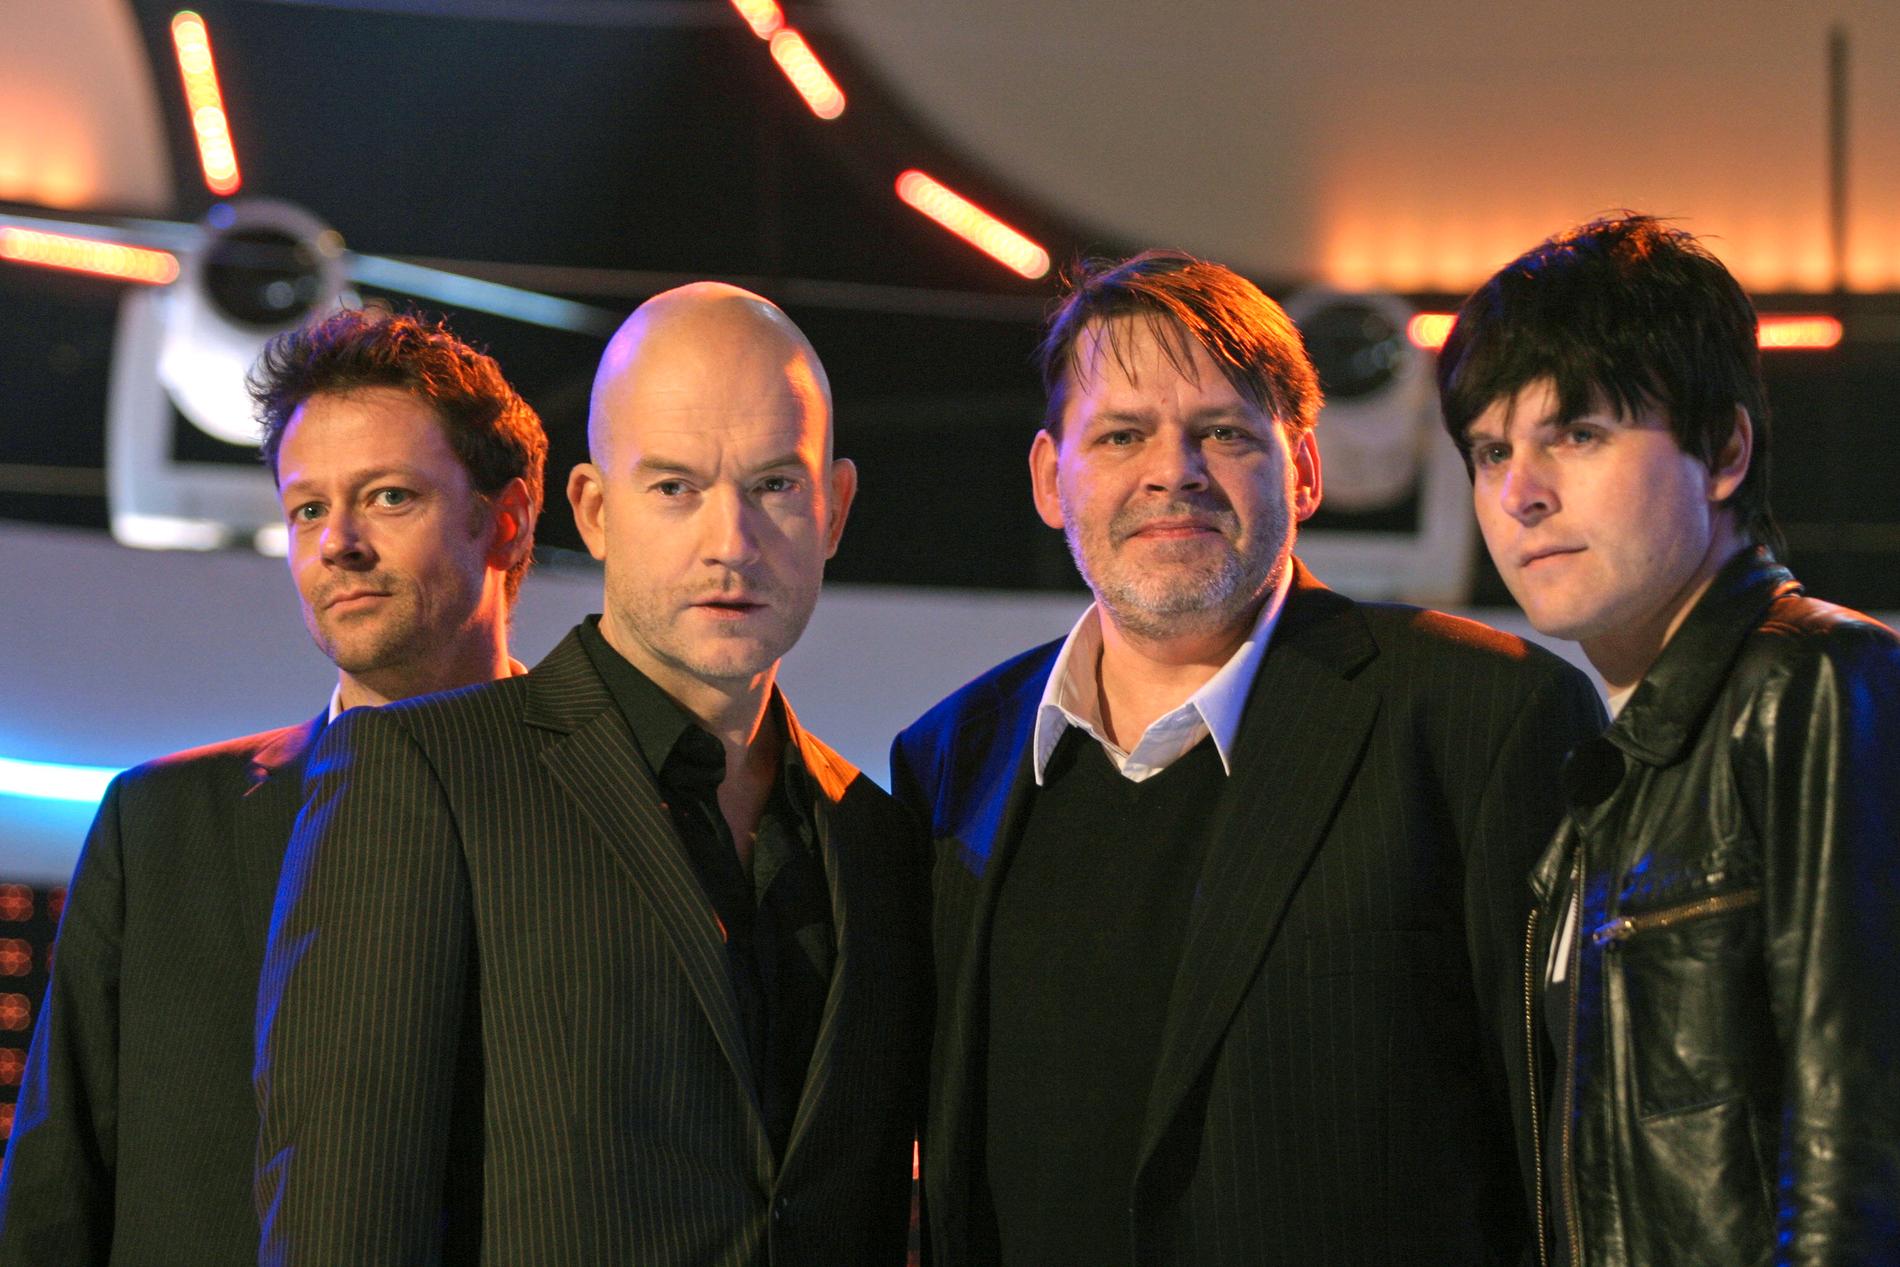 Tom Wolgers (tvåa från höger) var en del av bandet Lustans Lakejer, här på en arkivbild från Melodifestivalen 2007. Gruppens frontfigur Johan Kinde tvåa från vänster.